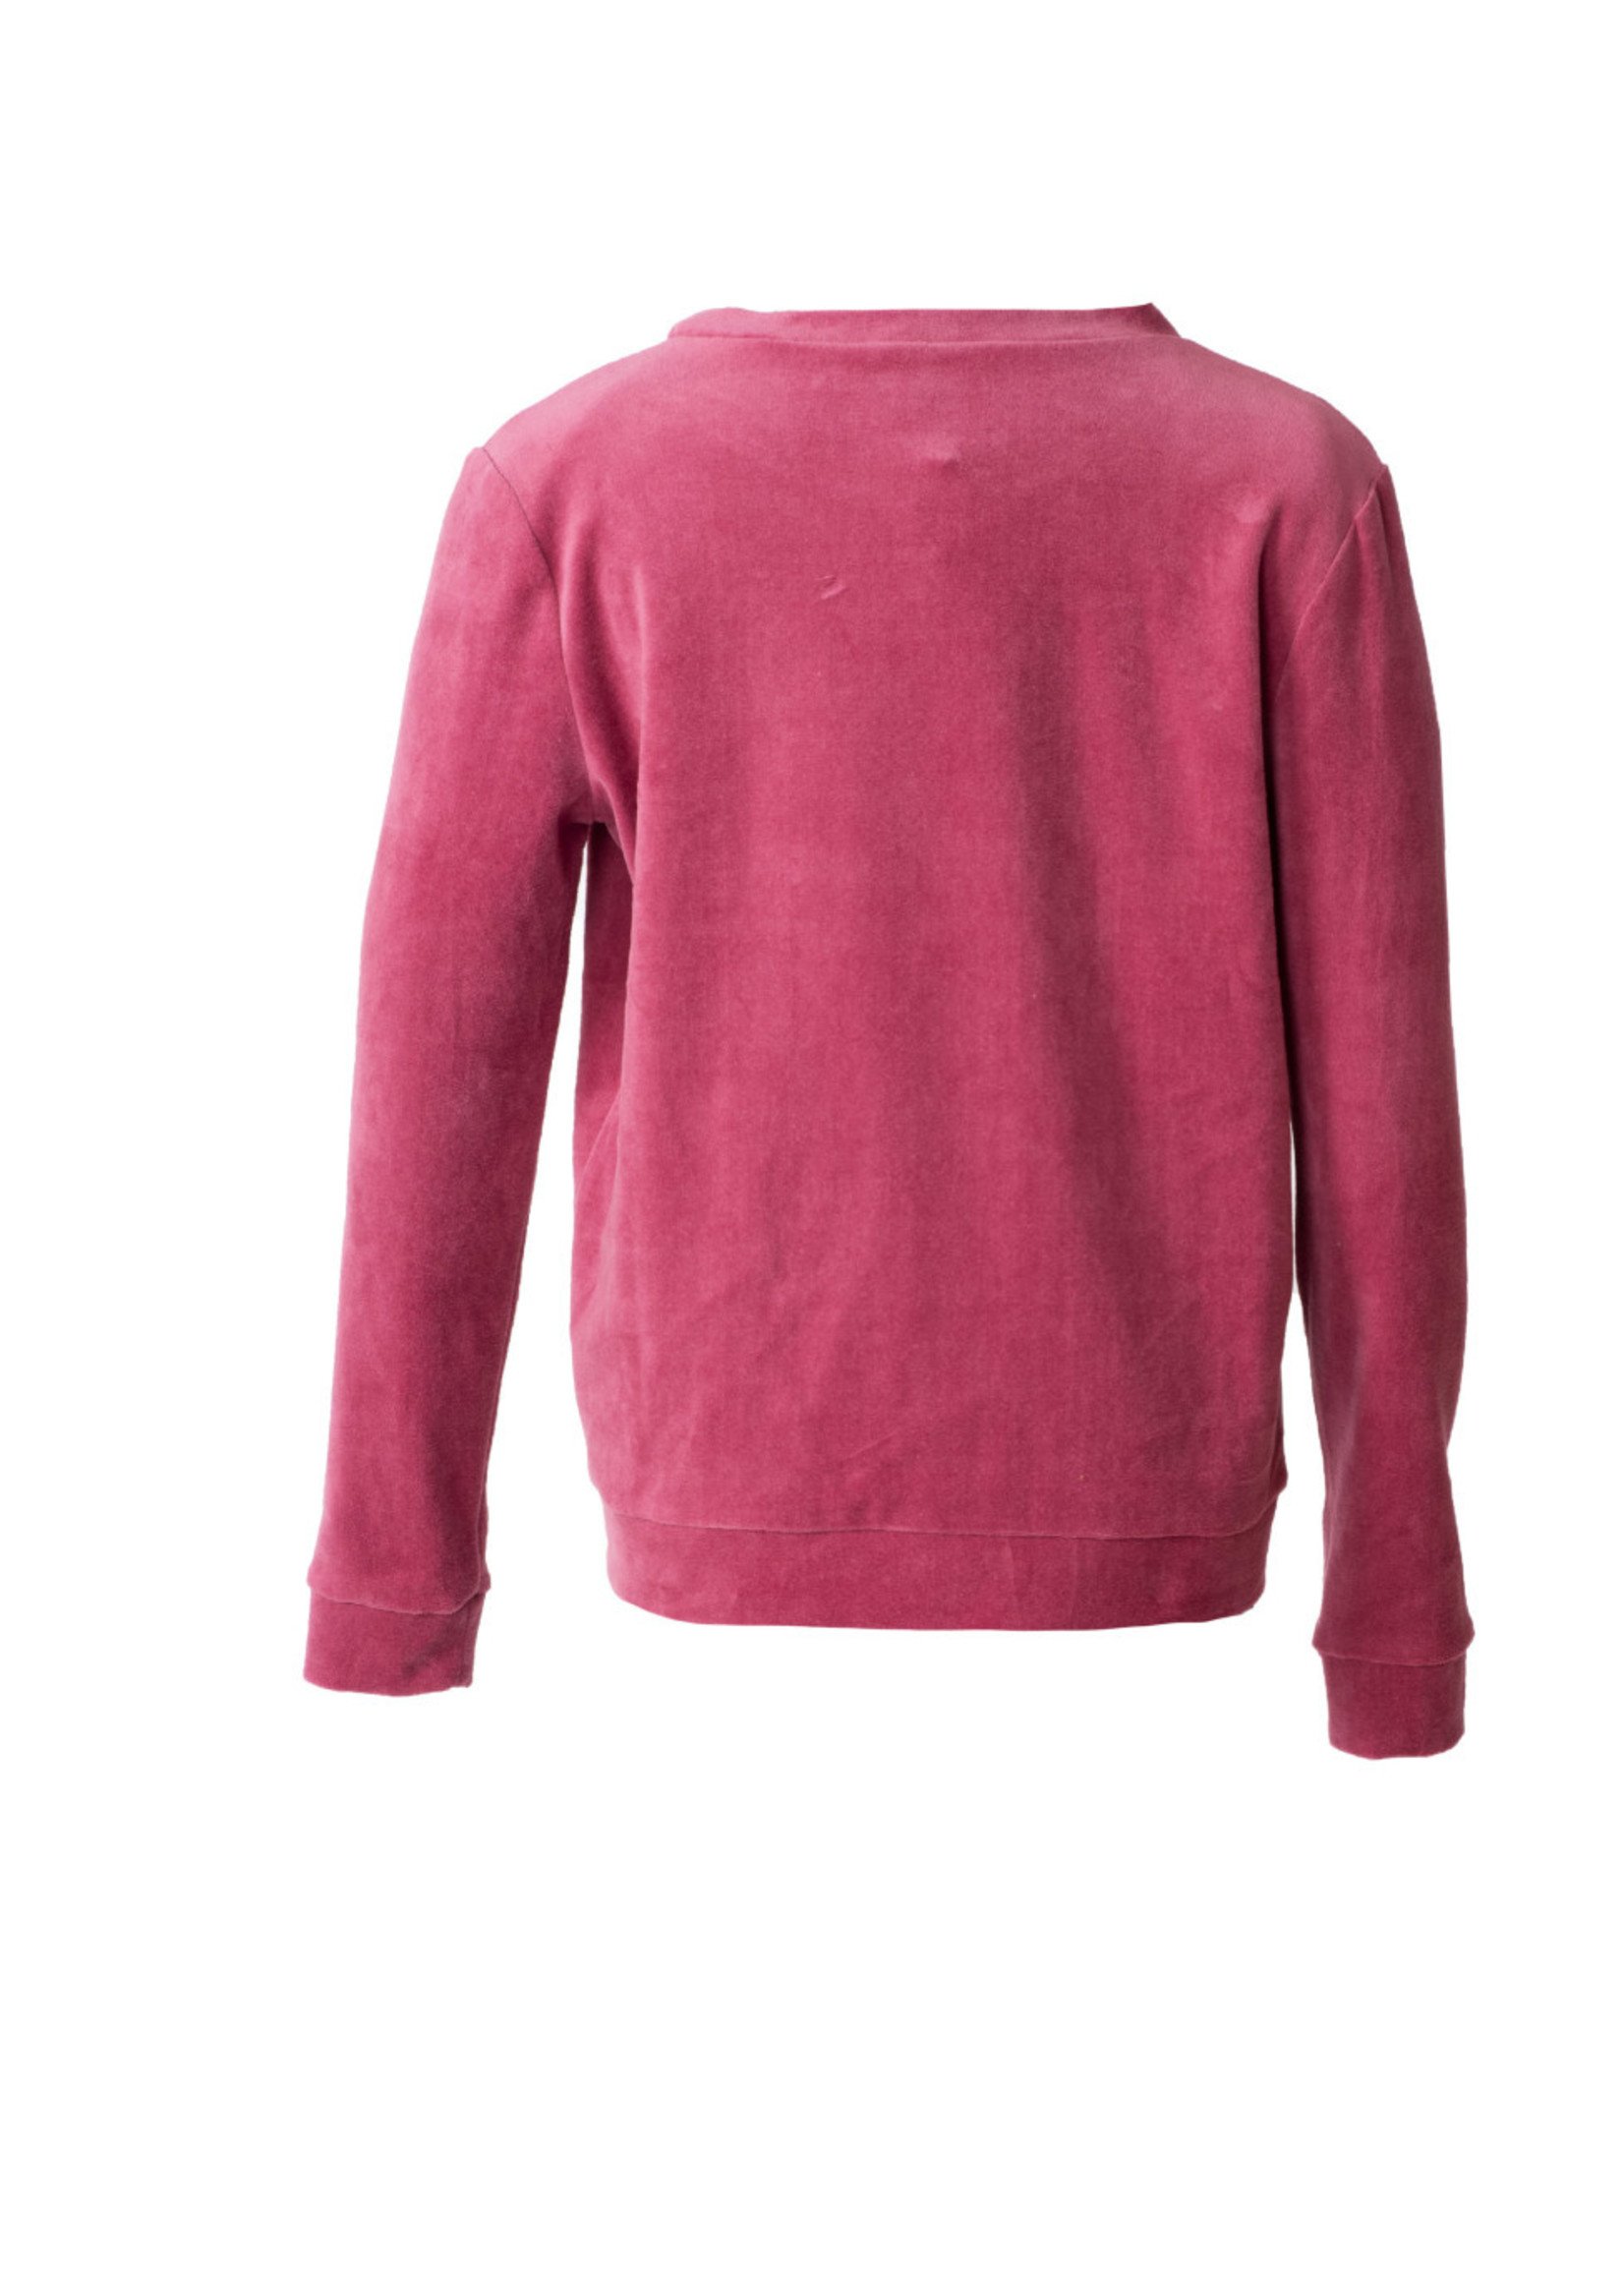 MOOI VROLIJK Sweater basic old pink 22088